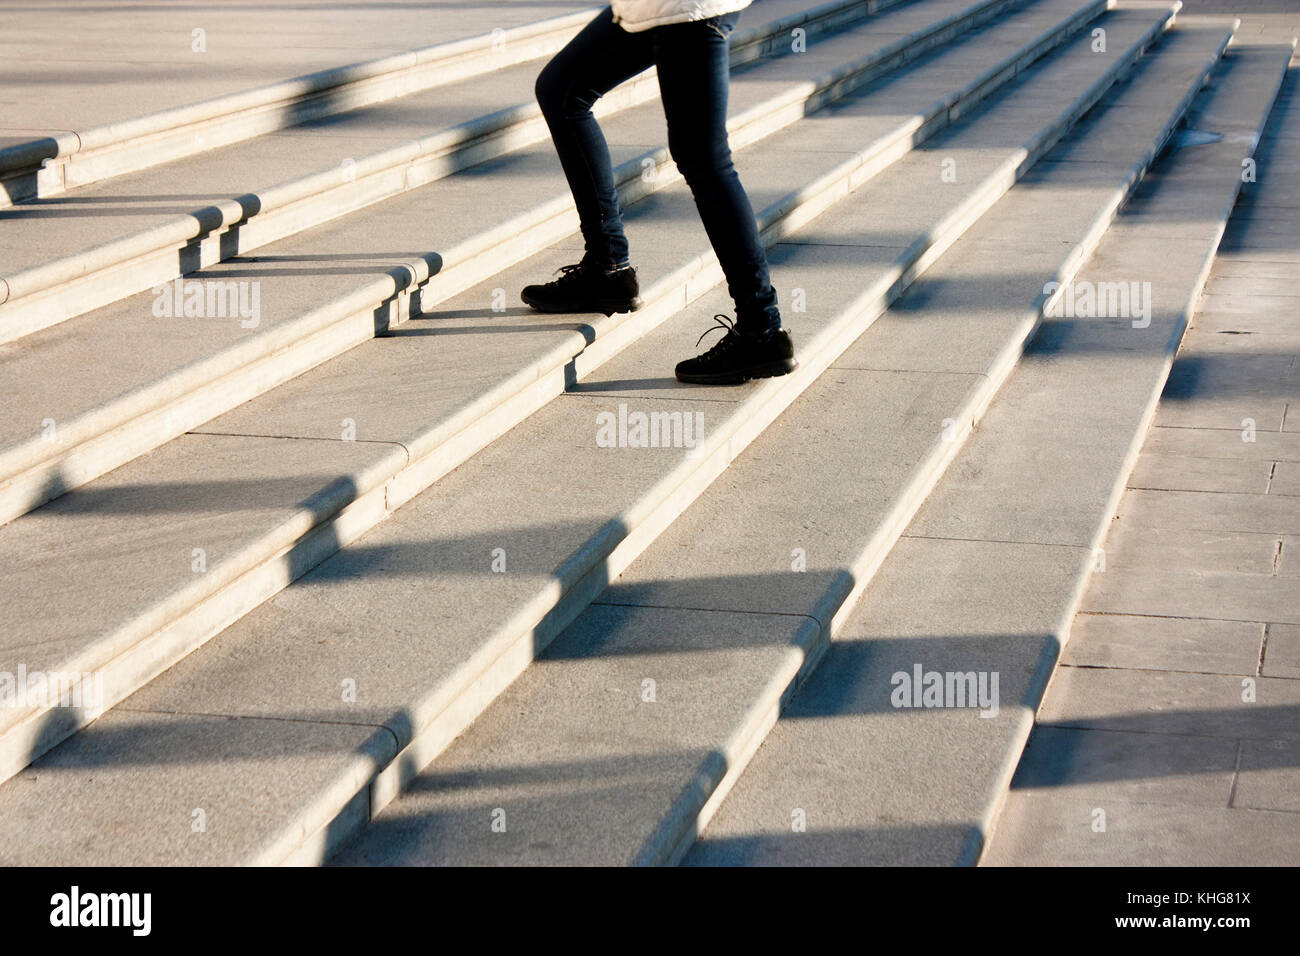 Ein junges Mädchen geht die Treppe hinauf in motion blur und Schatten der Menschen nach, die auf grossen öffentlichen Freibad Treppe Stockfoto